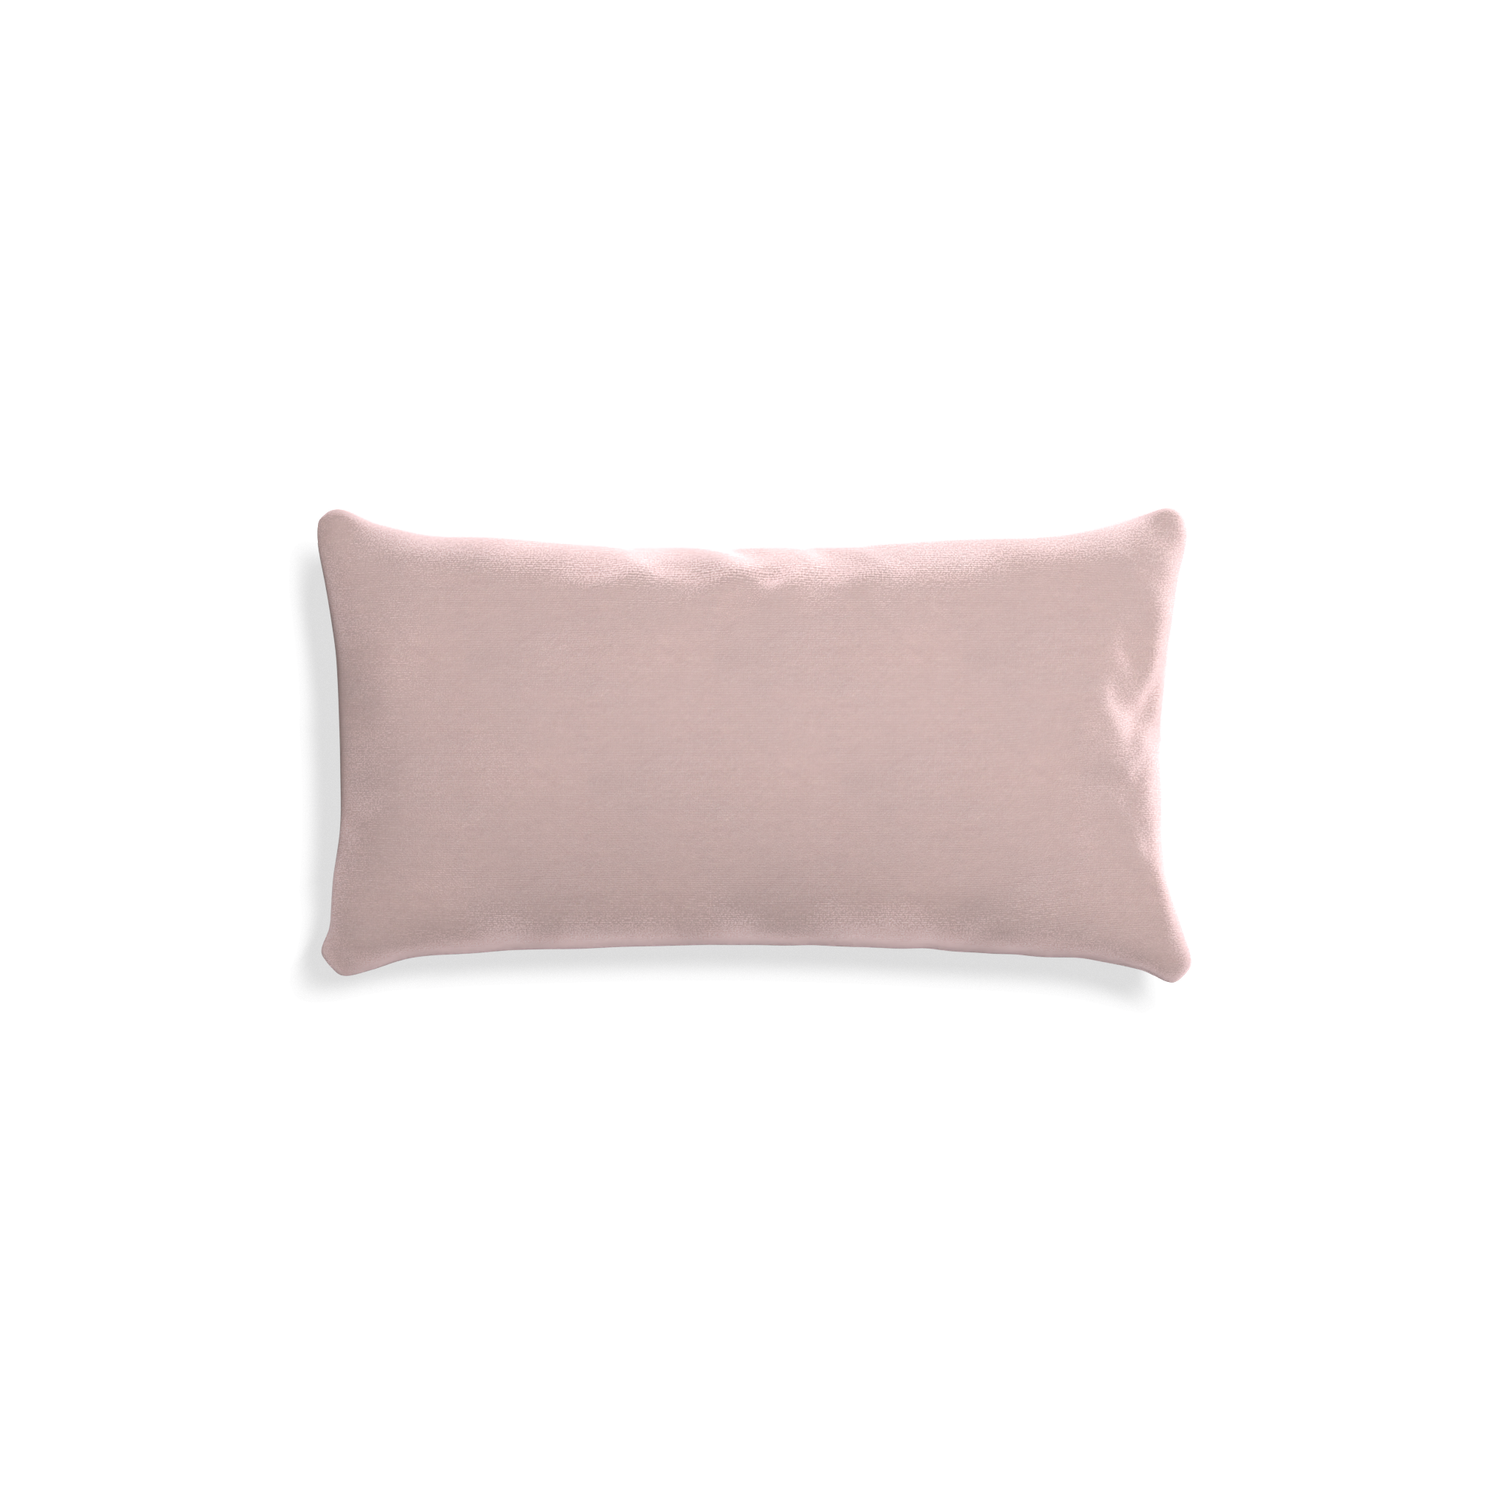 rectangle light pink velvet pillow